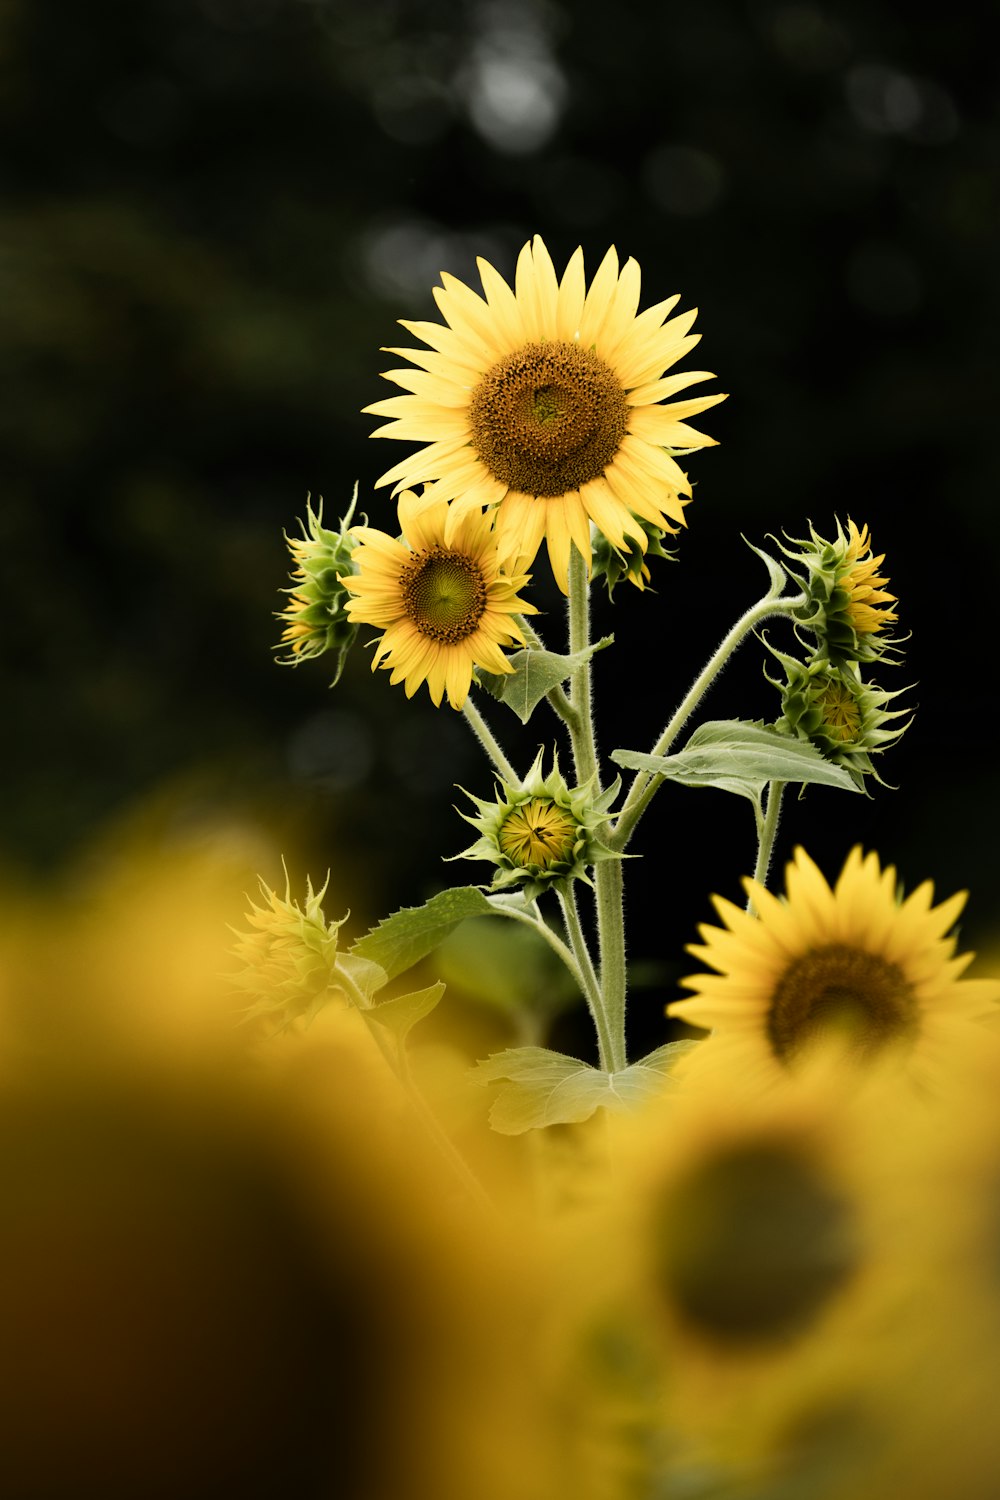 Bilder zum Thema Sonnenblumen Fotografie